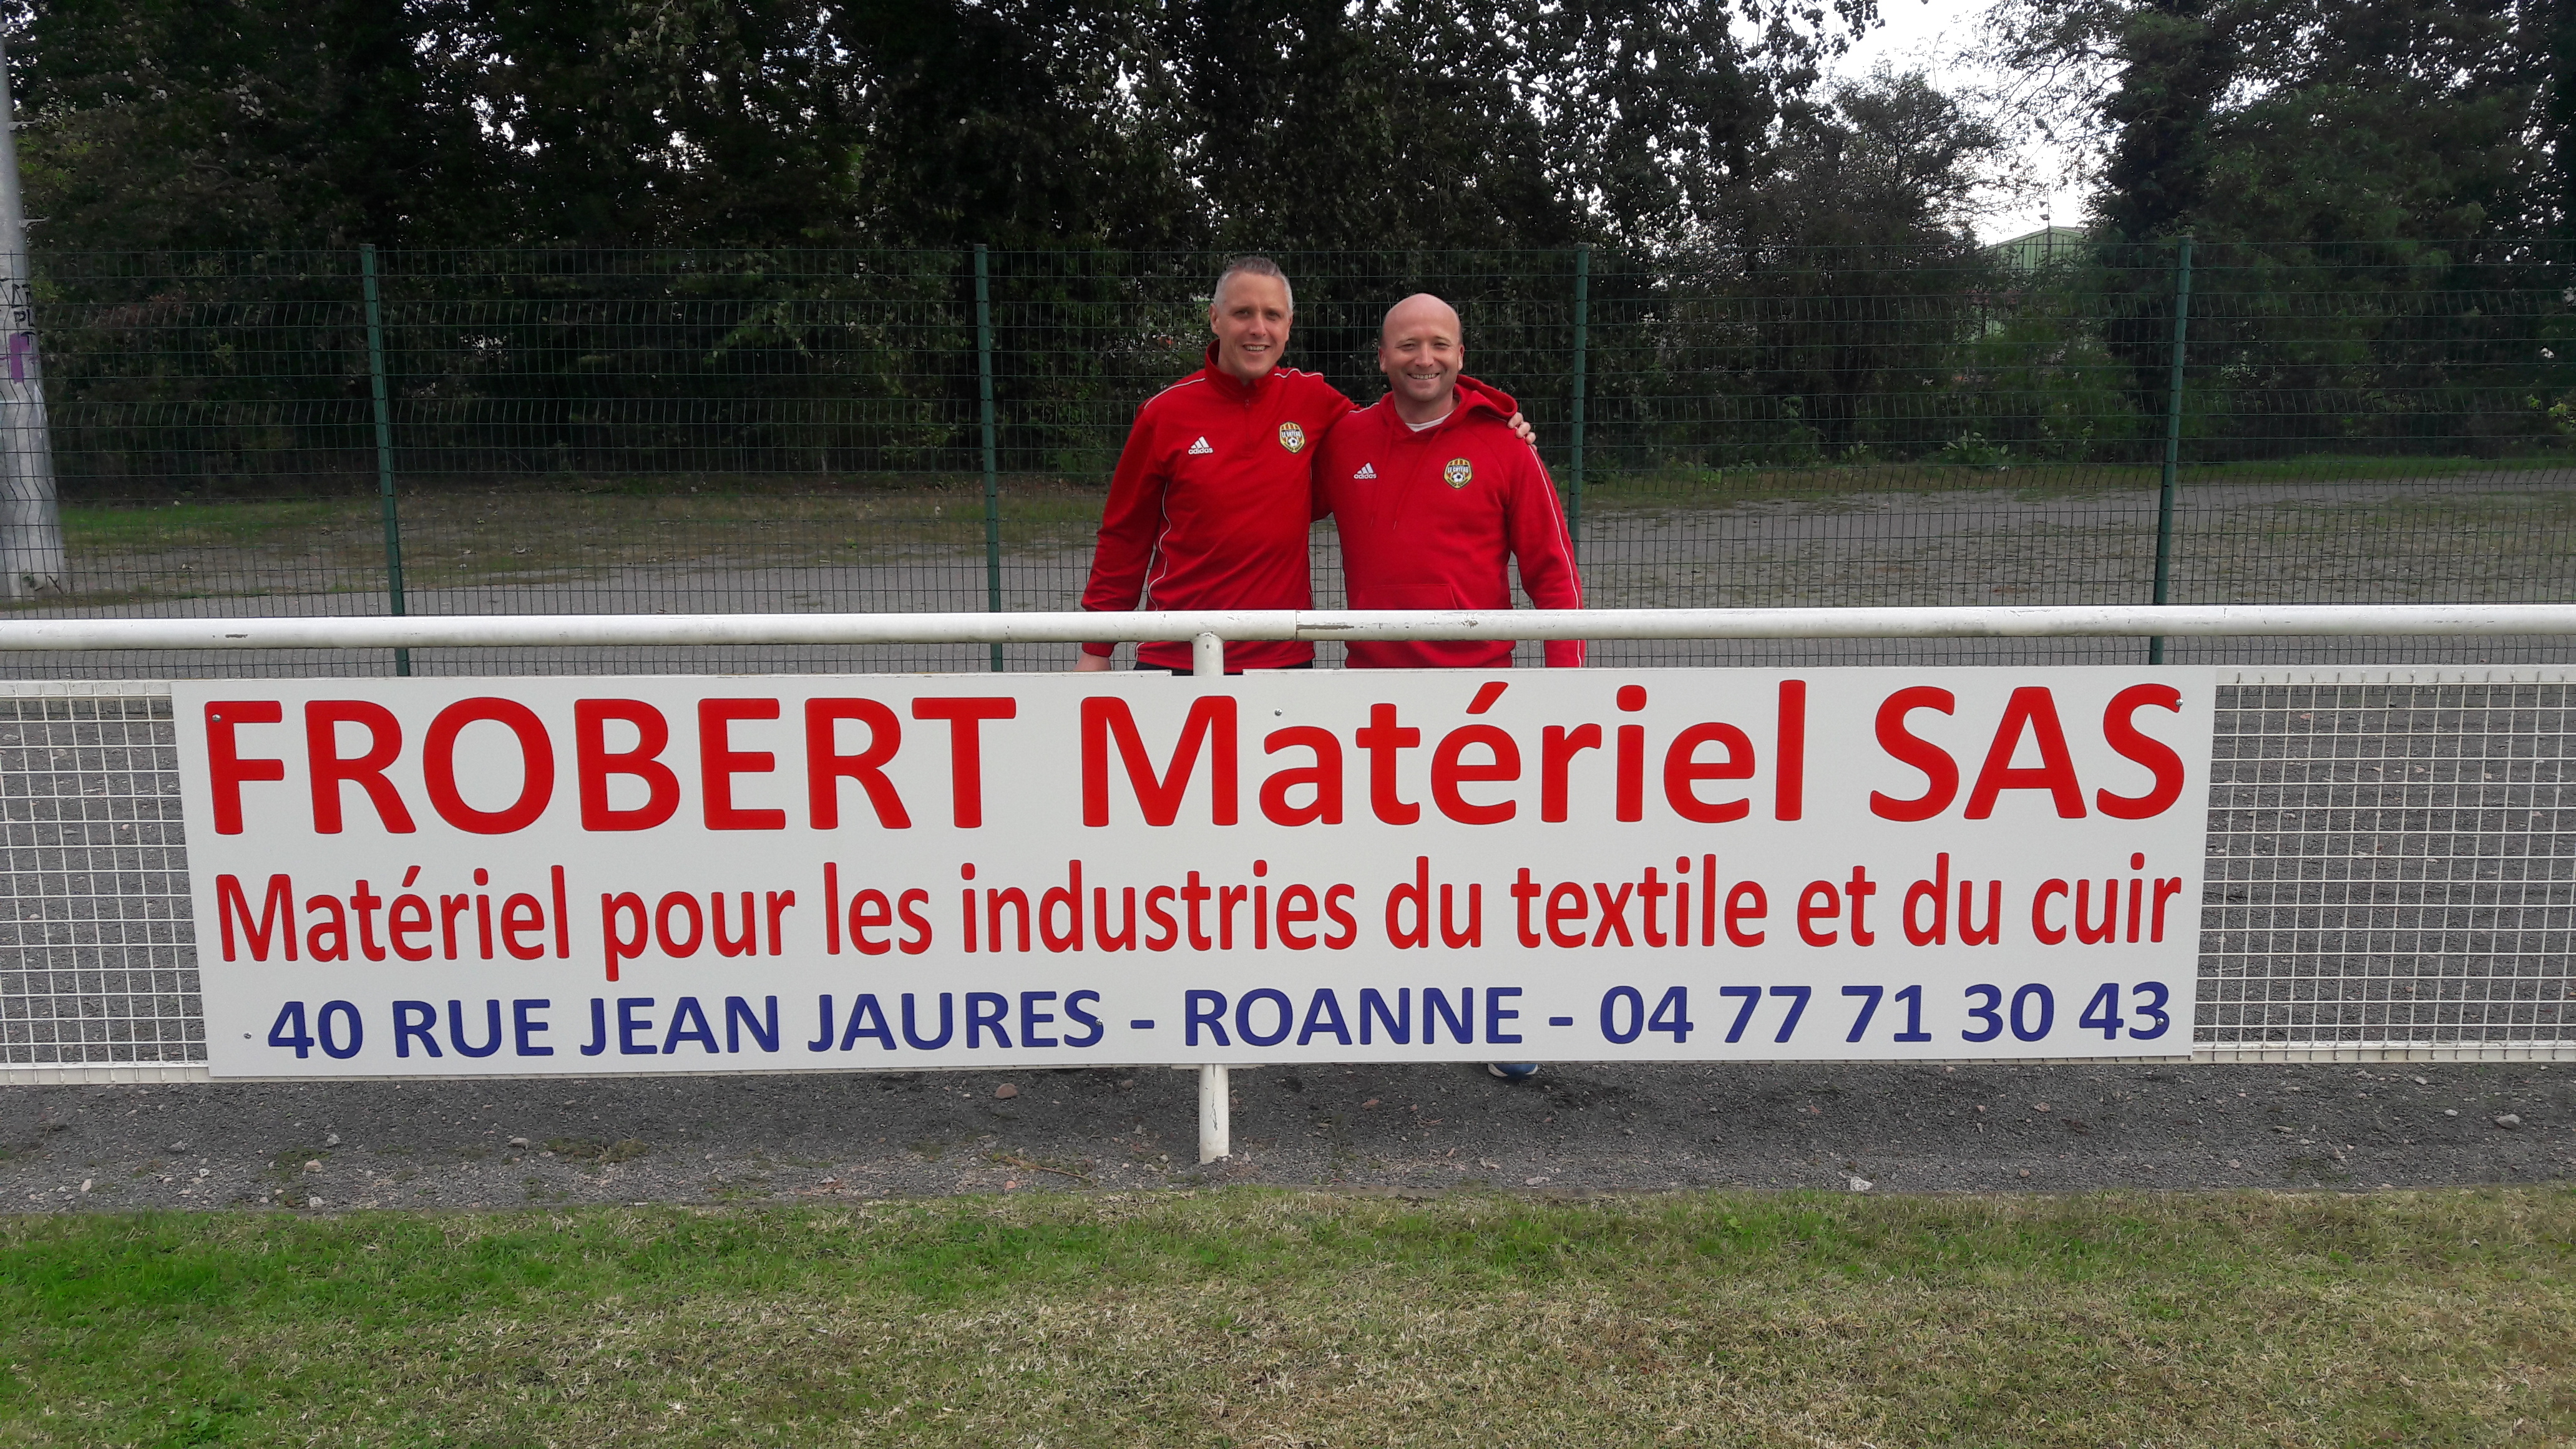 Matériel pour les industries du textile et du cuir - Frobert Matériel SAS